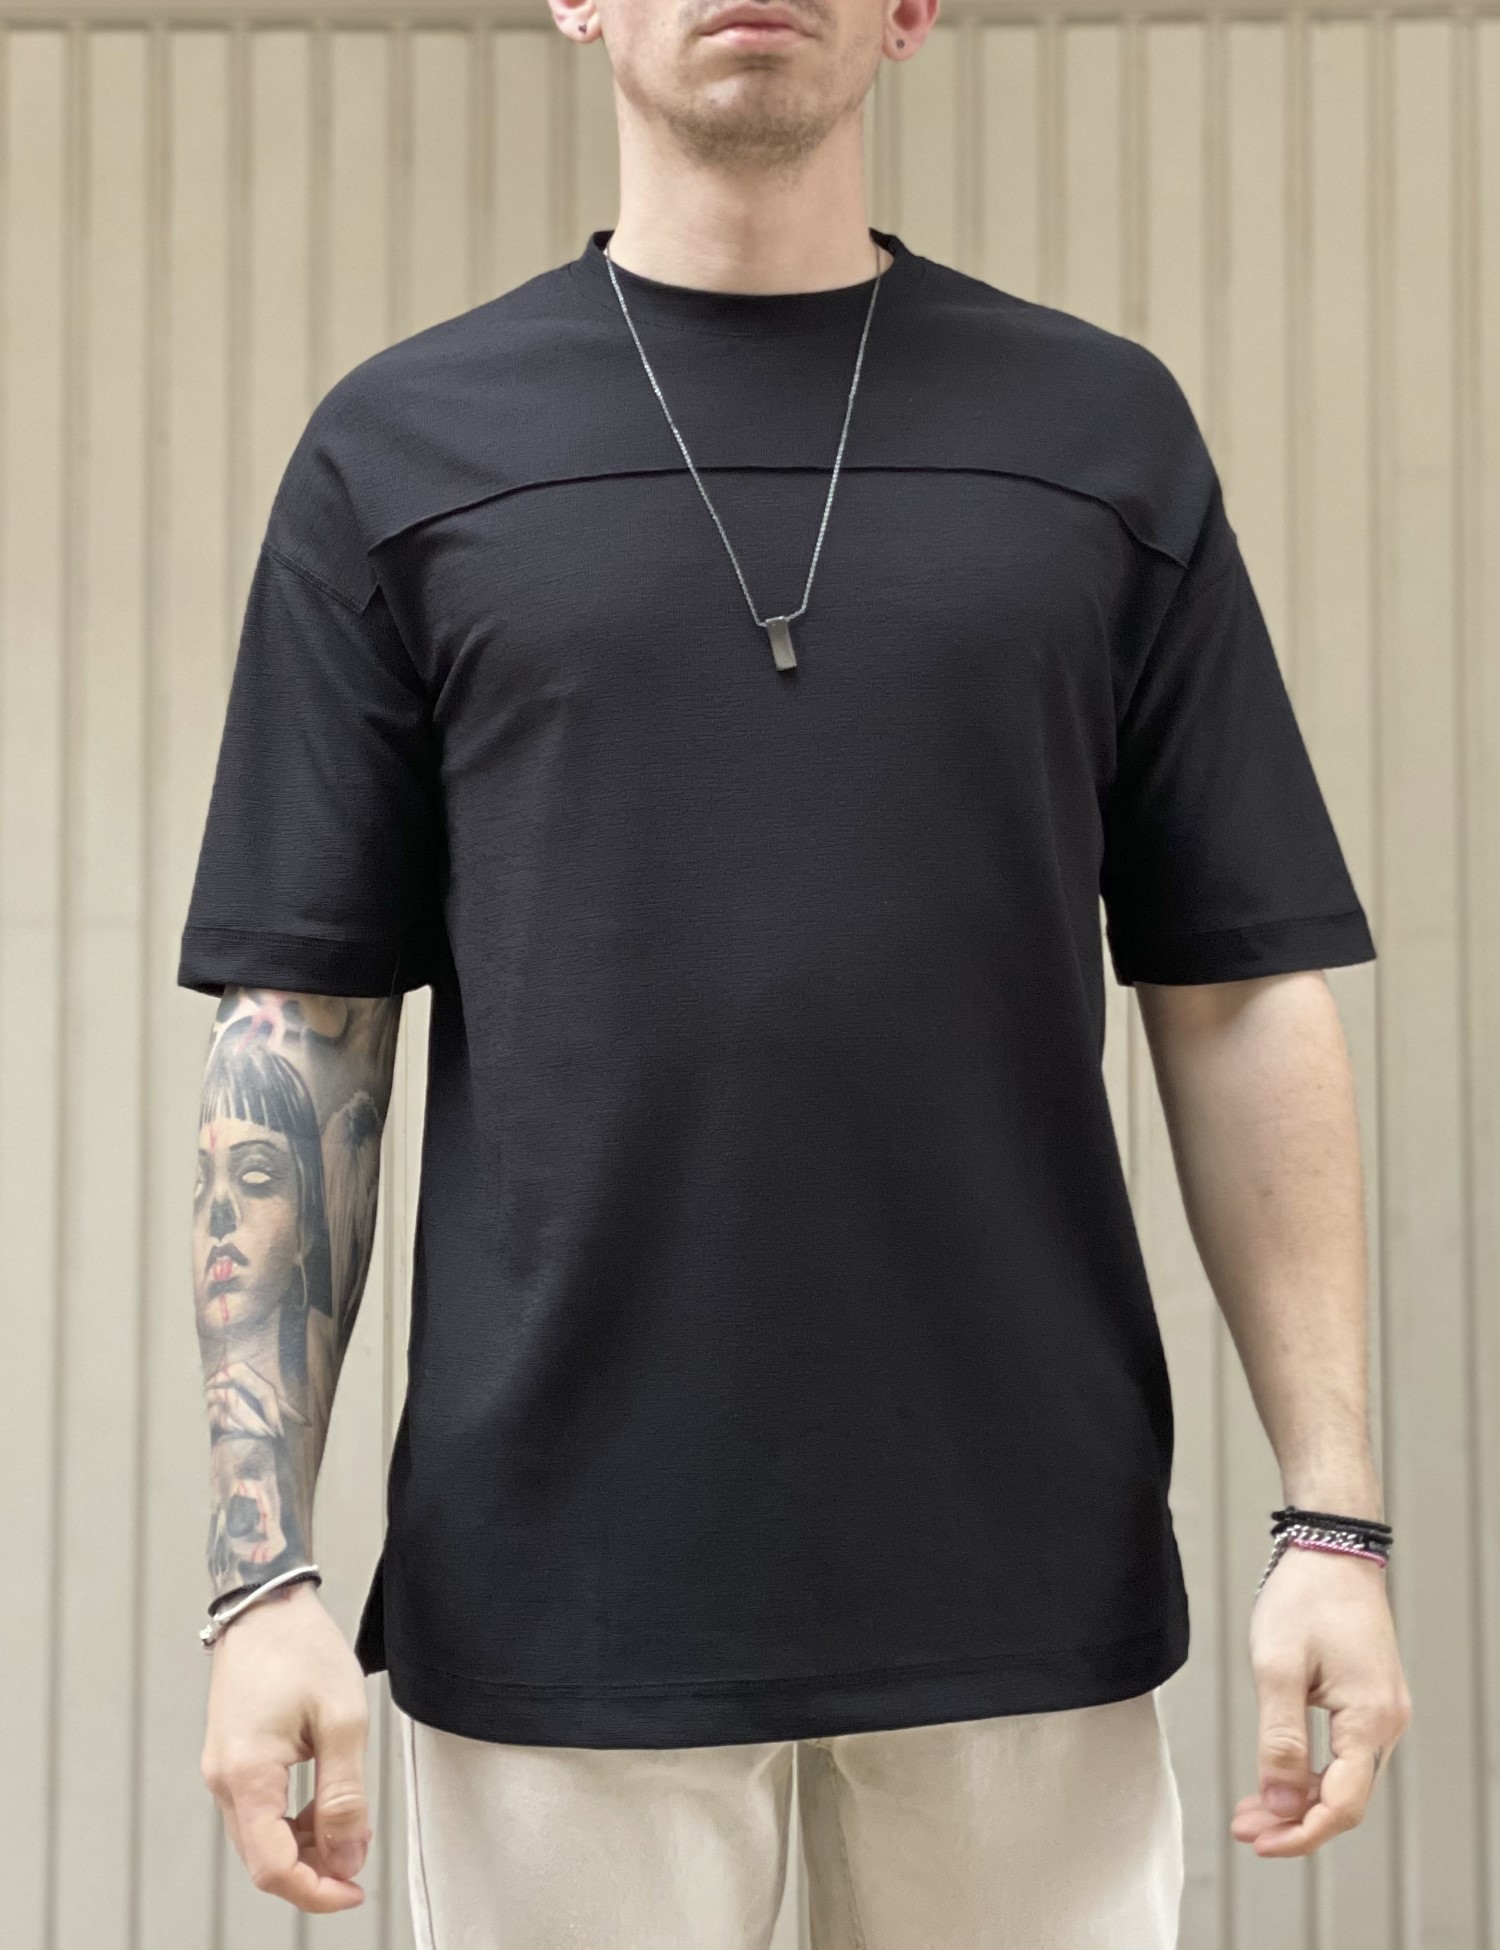 ΑΝΔΡΑΣ > ΑΝΔΡΙΚΑ ΡΟΥΧΑ > ΜΠΛΟΥΖΕΣ > T-Shirt Ανδρική μαύρη κοντομάνικη μπλούζα Oversized TST2030